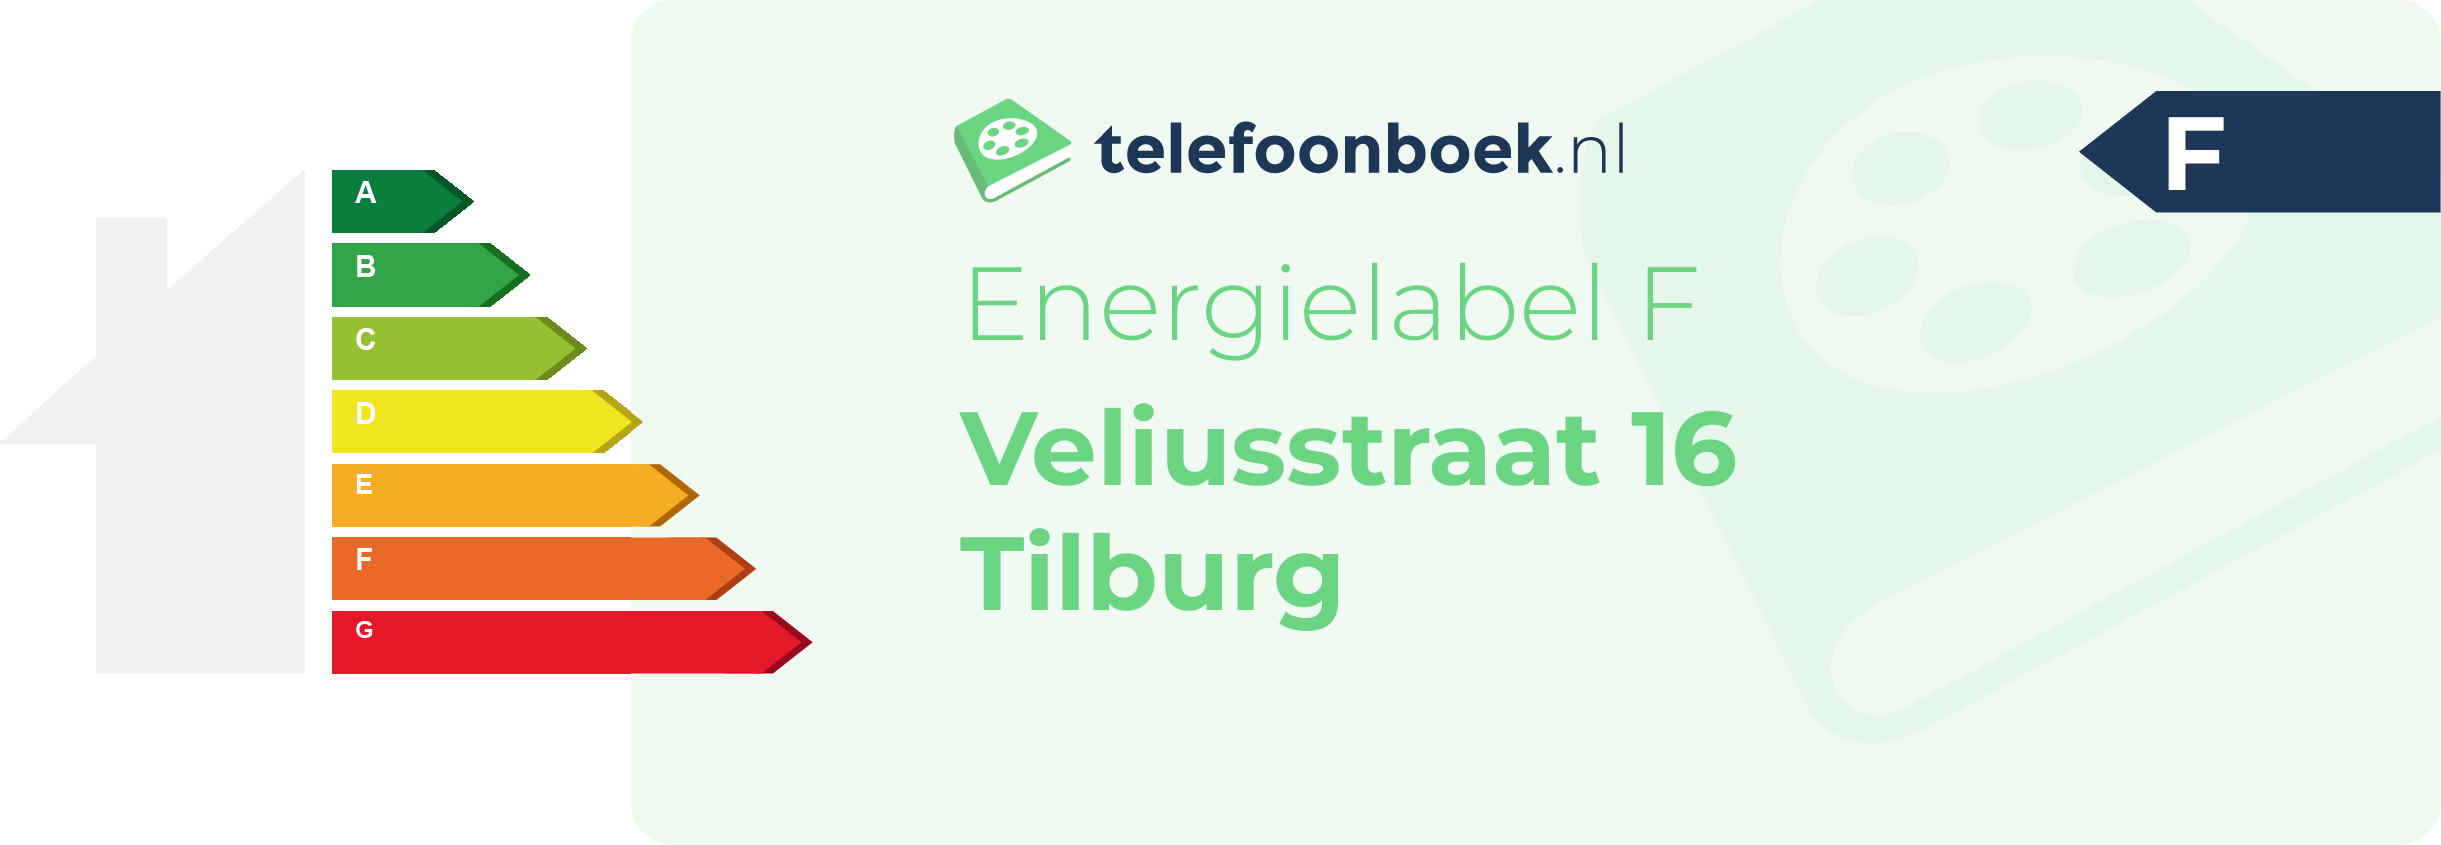 Energielabel Veliusstraat 16 Tilburg